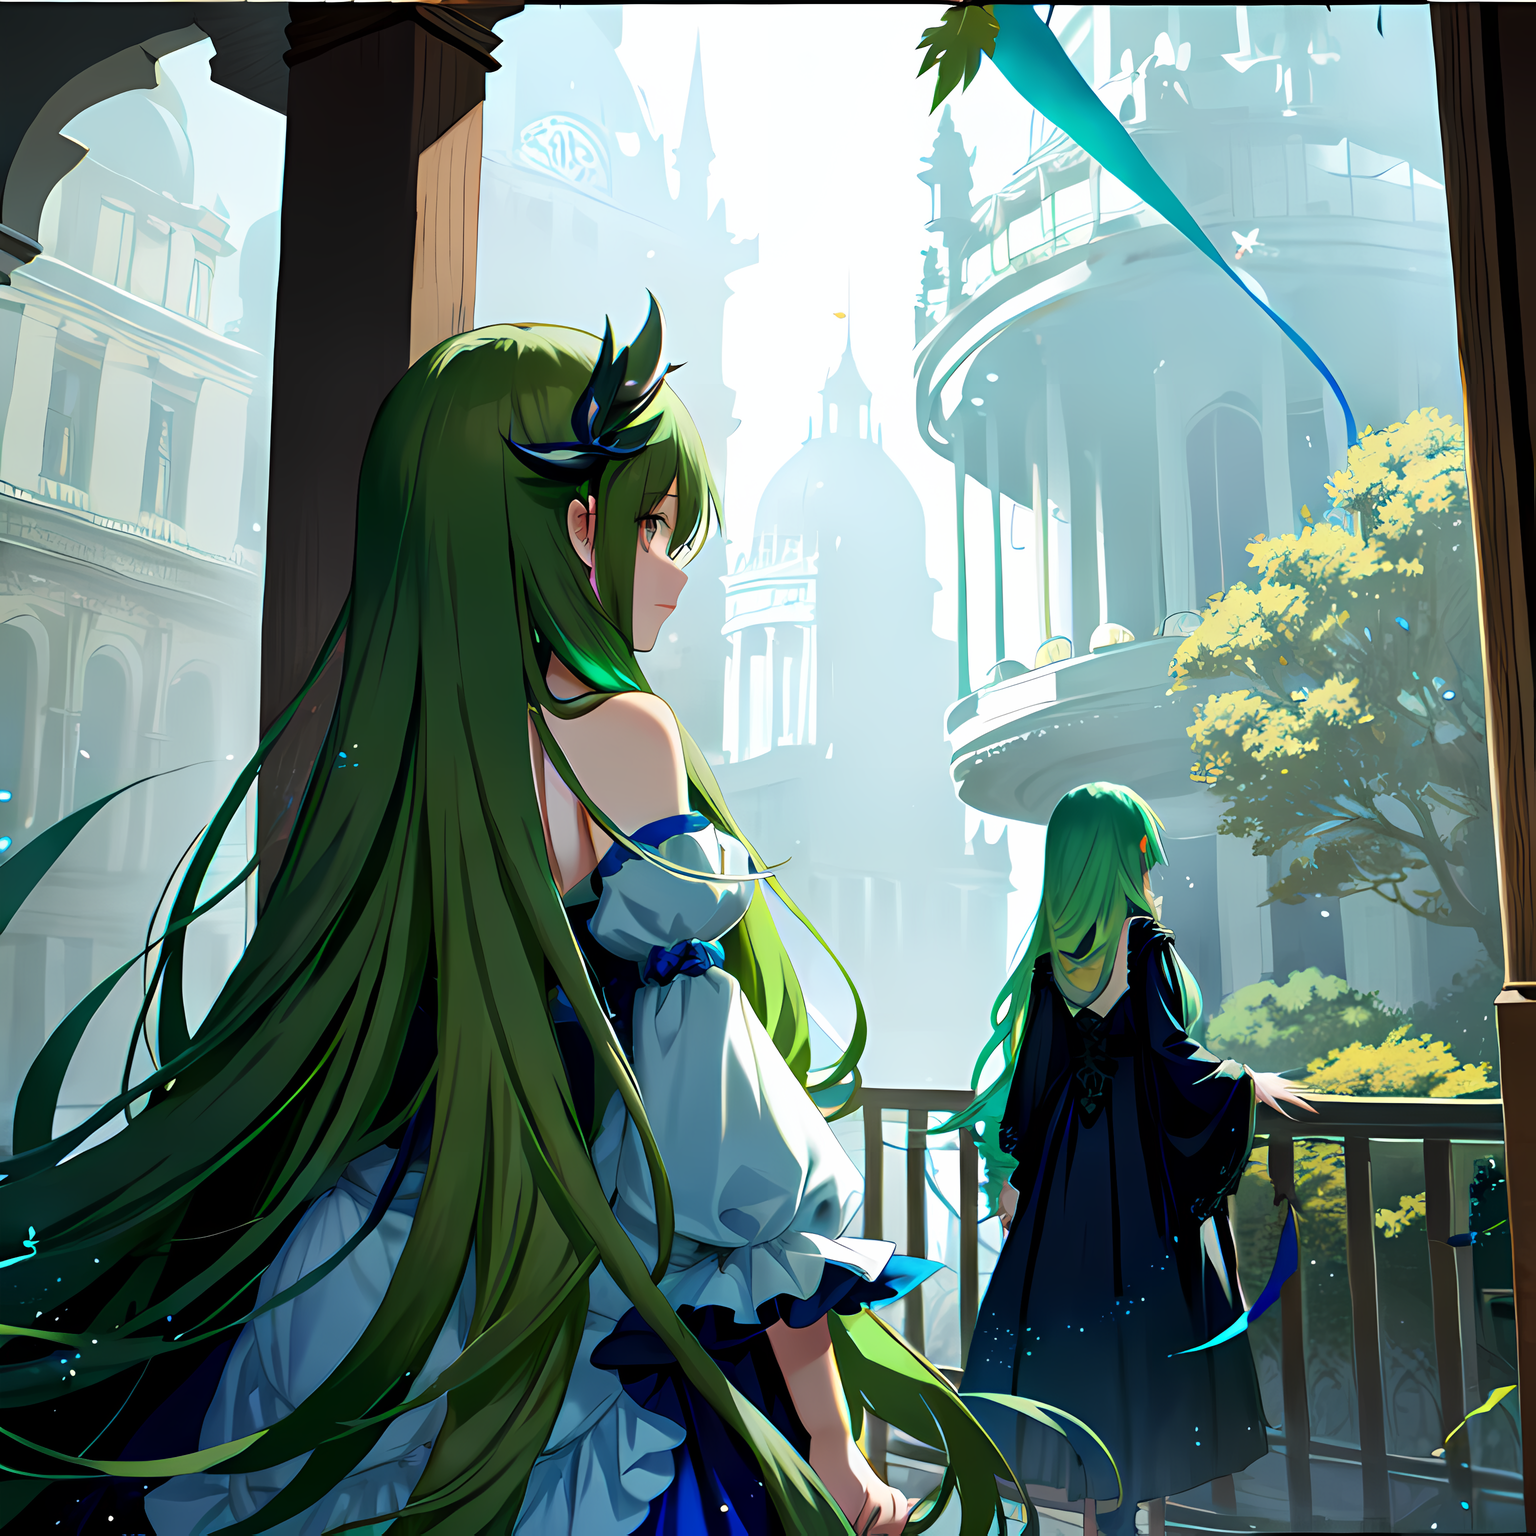 绿发少女，穿插着建筑的长发公主插画图片壁纸